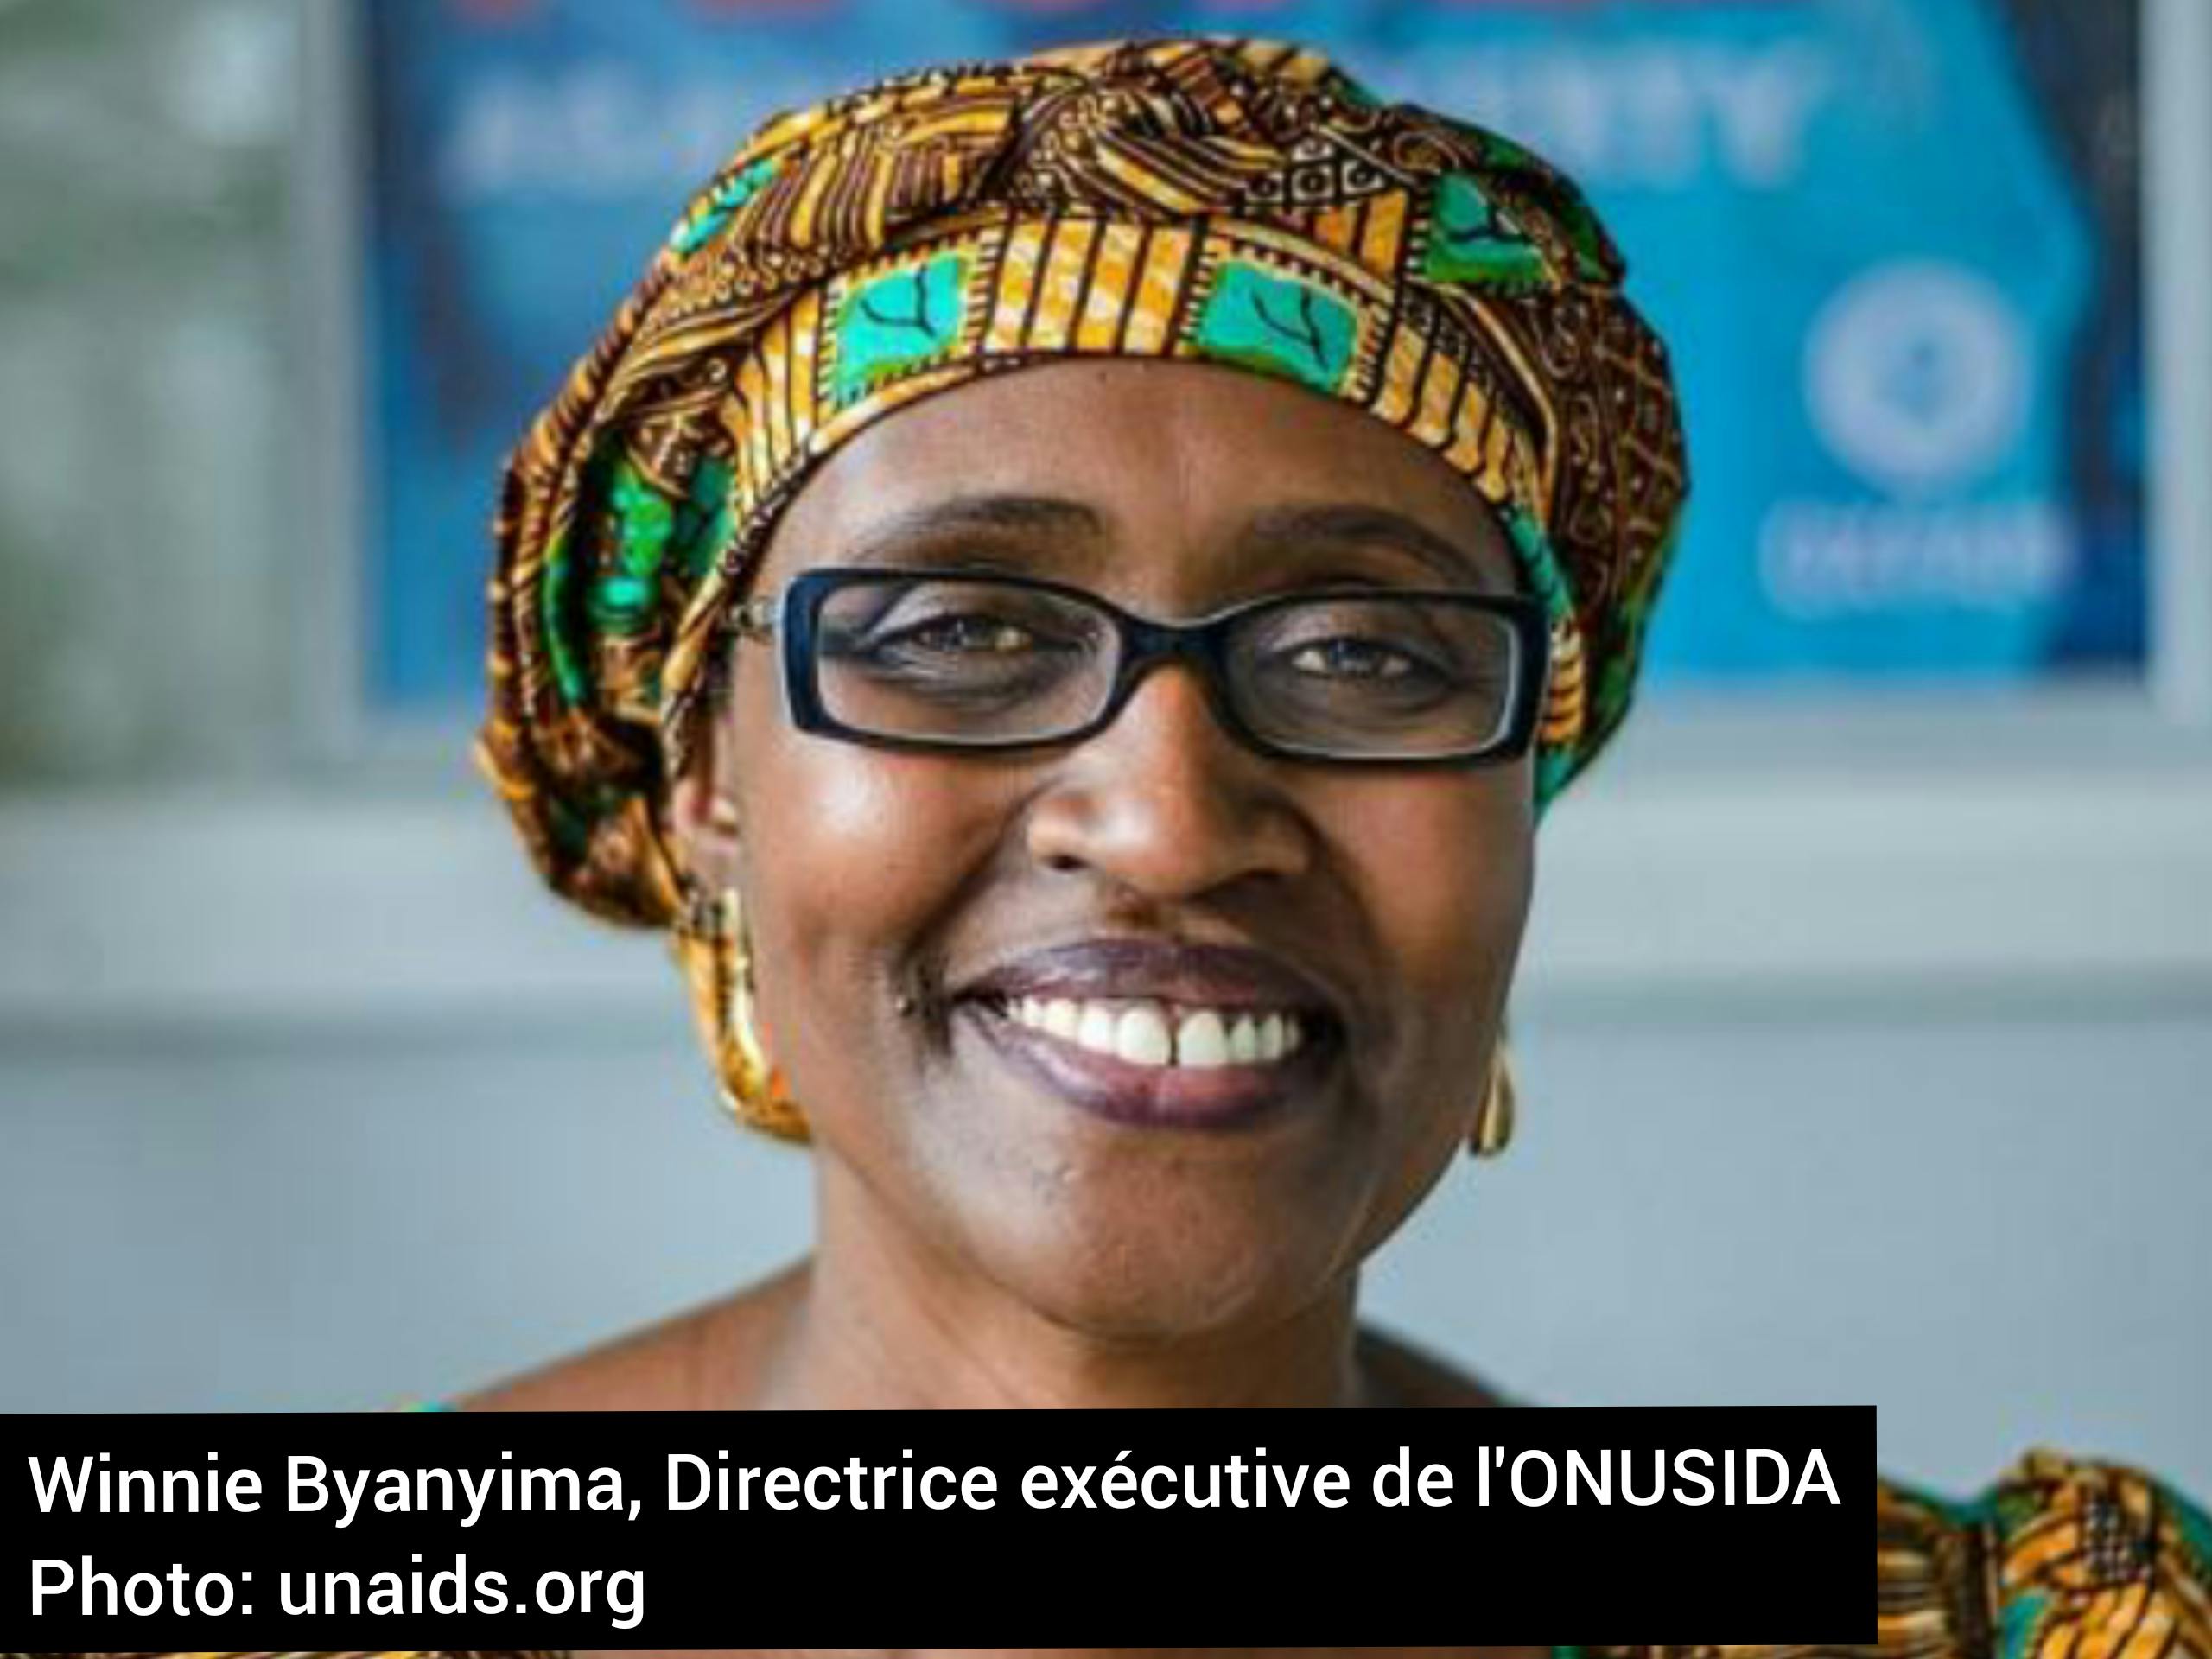 Journée mondiale du SIDA : le message de Winnie Byanyima, Directrice exécutive de l’ONUSIDA